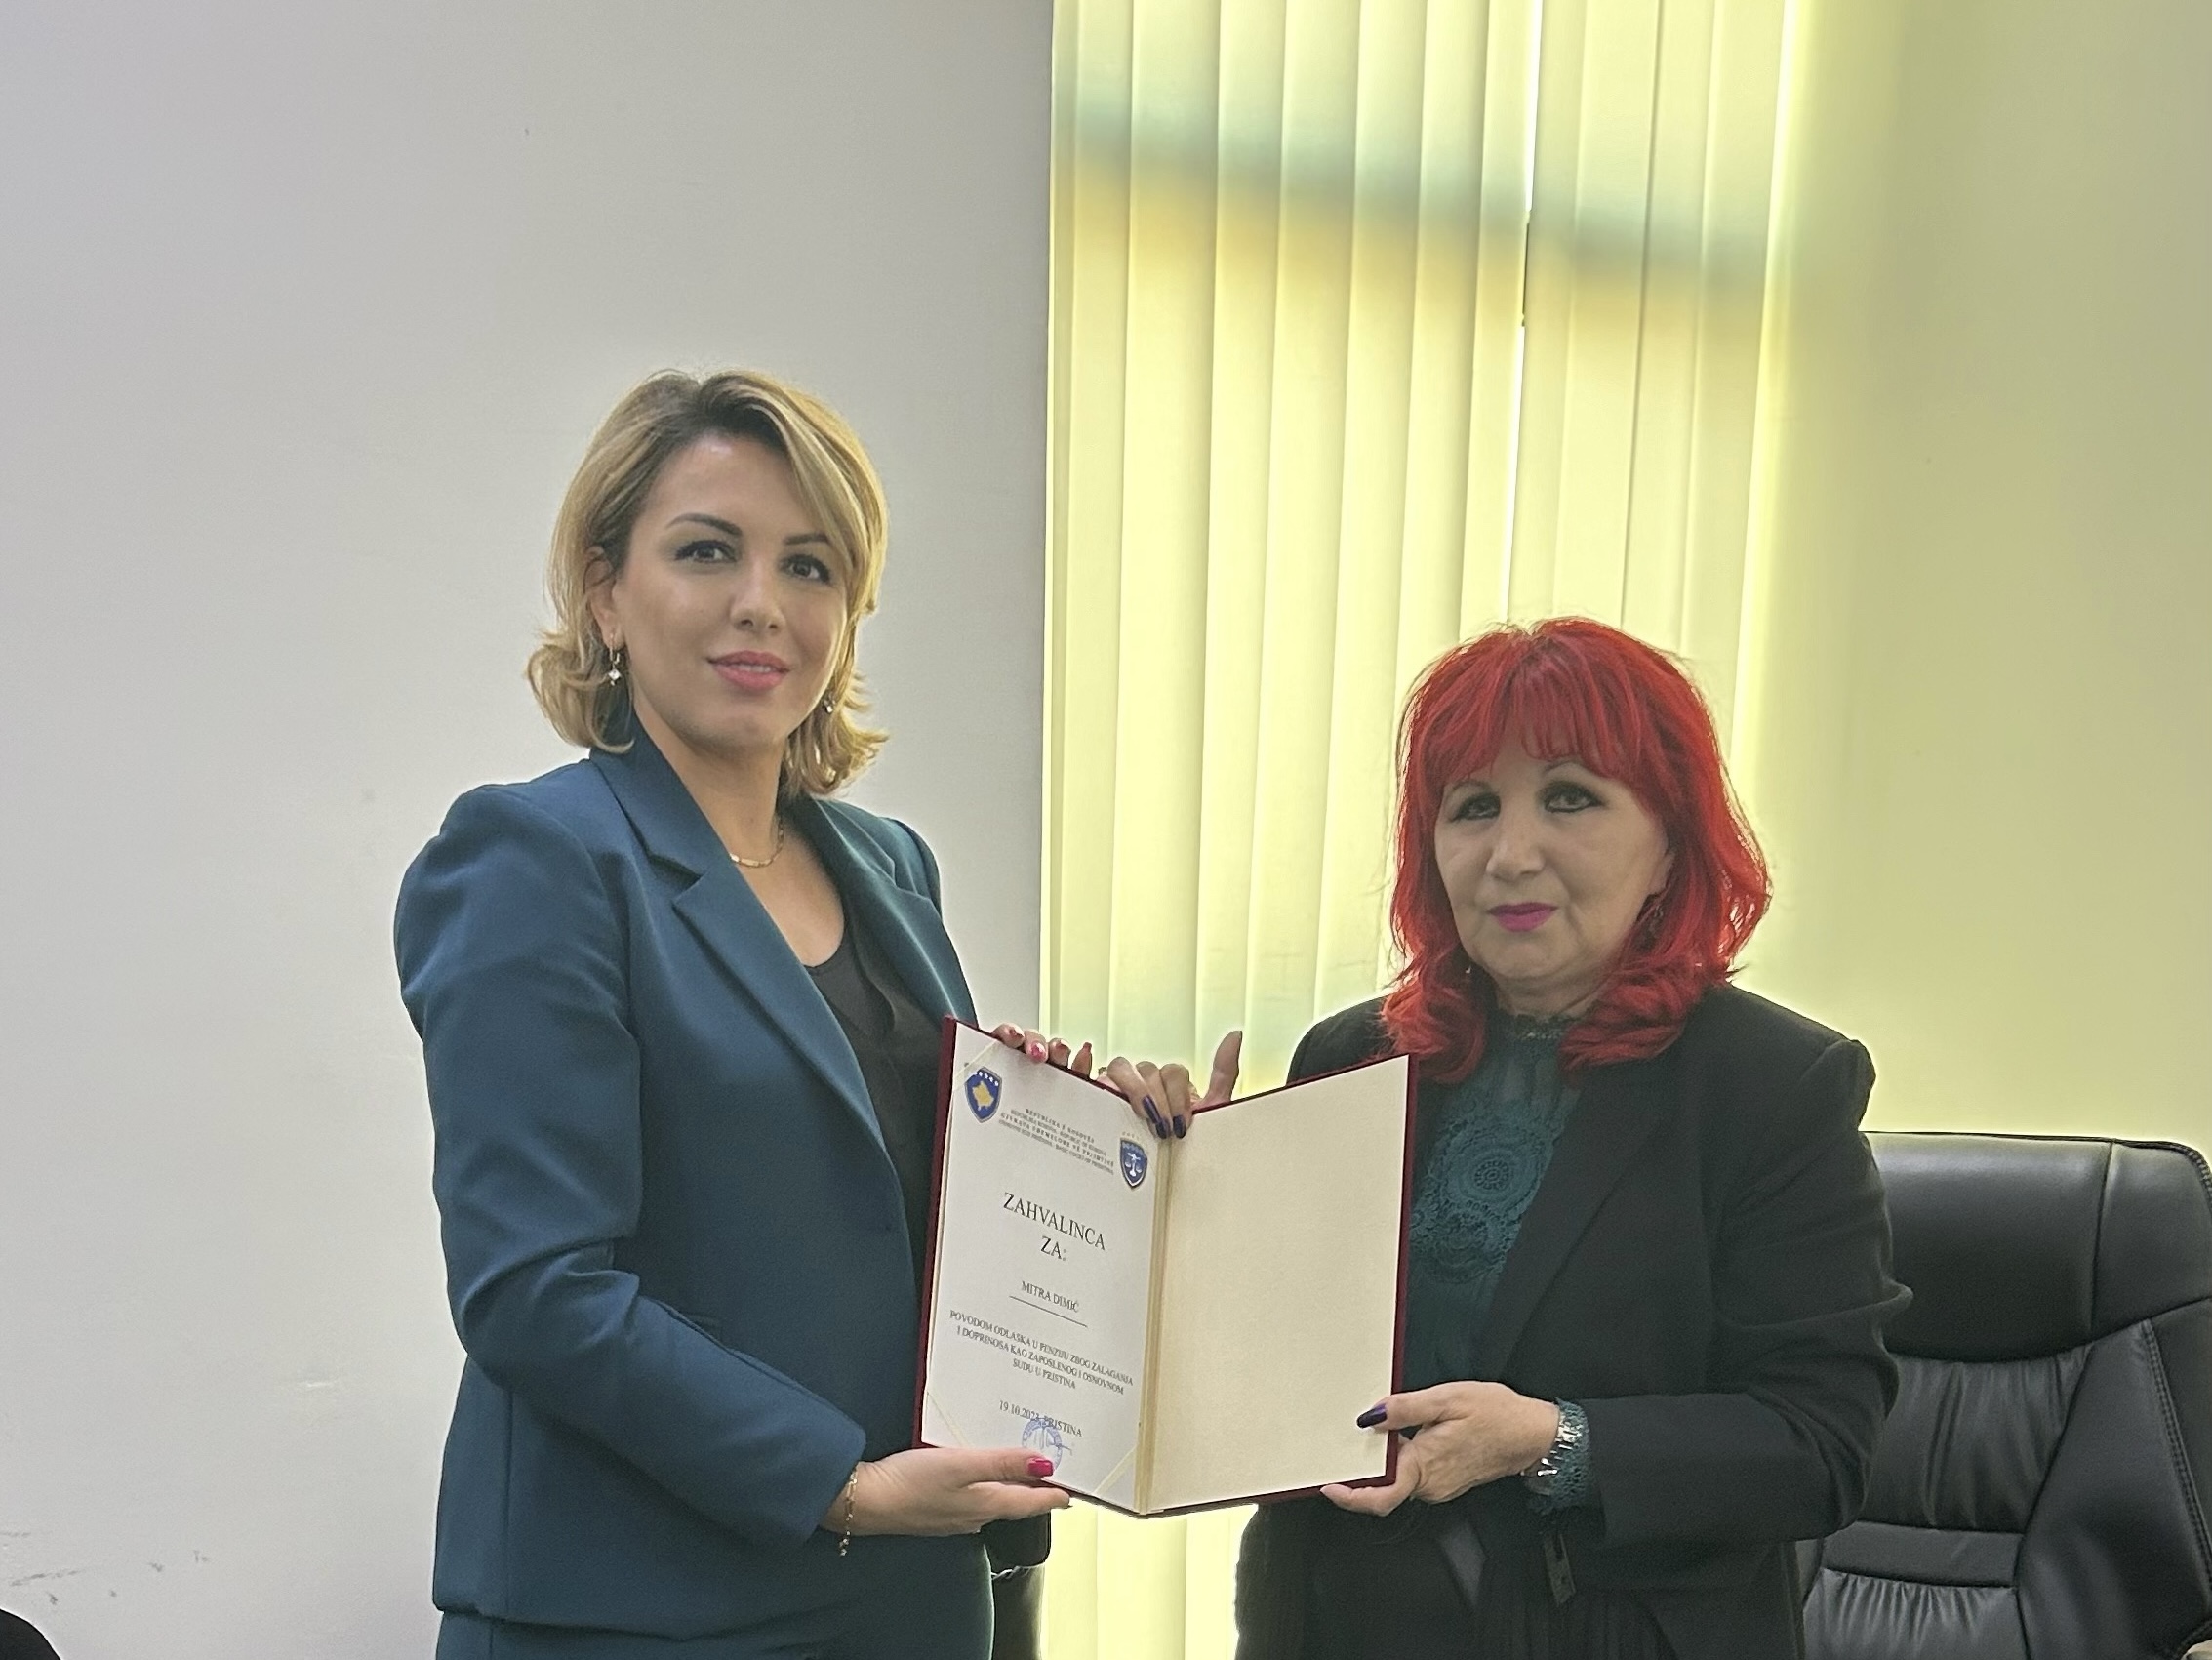 Ka arritur moshën e pensionimit gjyqtarja e Gjykatës Themelore në Prishtinë – Dega në Graçanicë, Mitra Dimiç